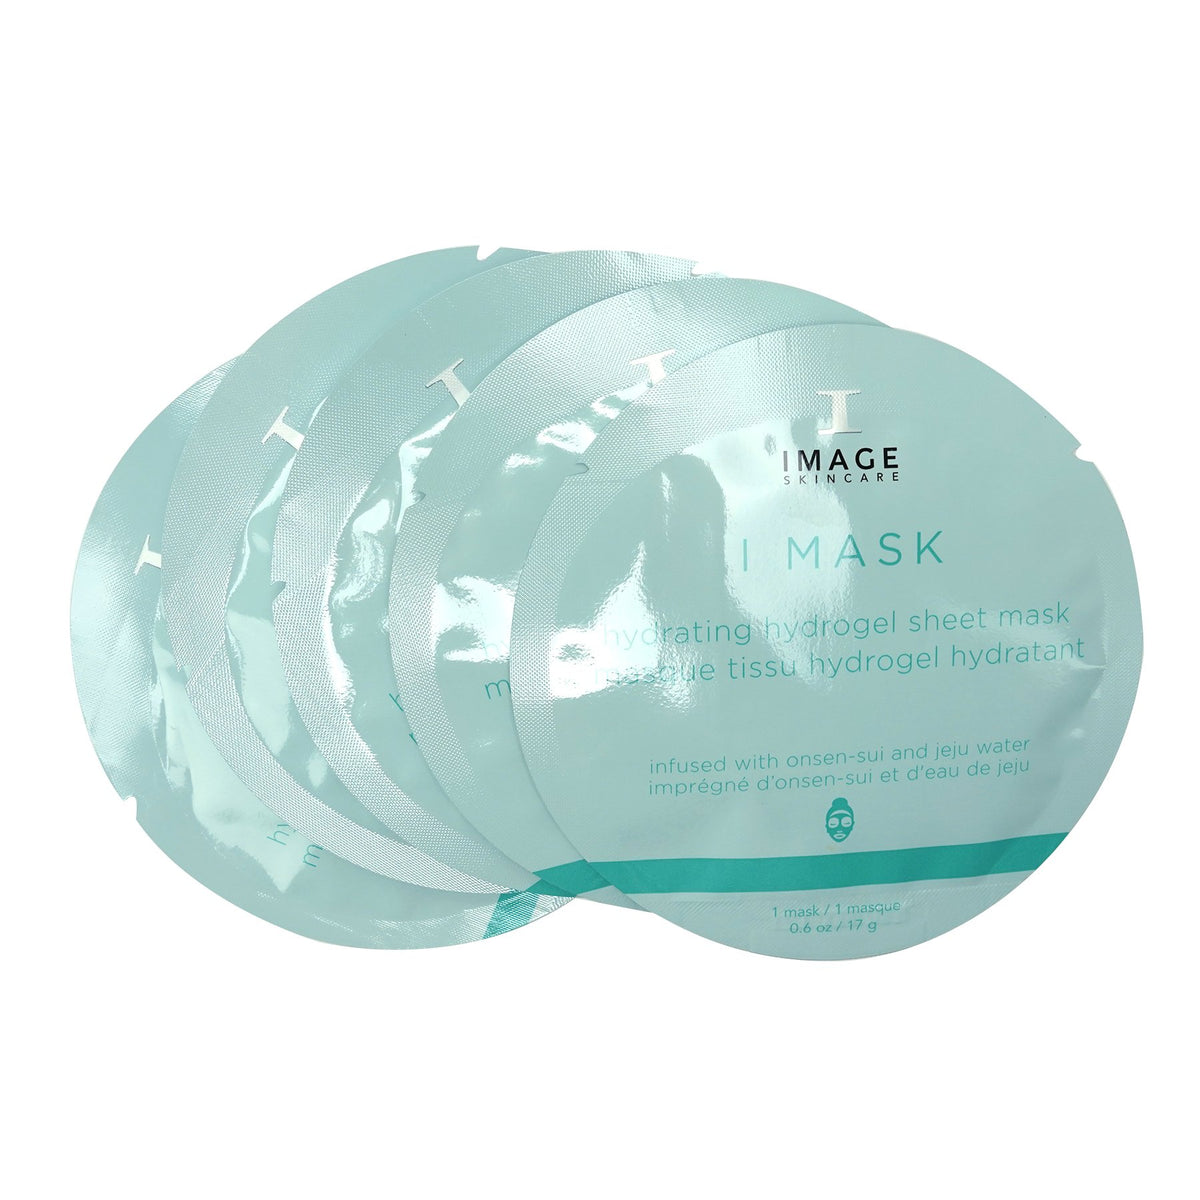 Image I MASK Hydrating Hydrogel Sheet Mask - 5pk